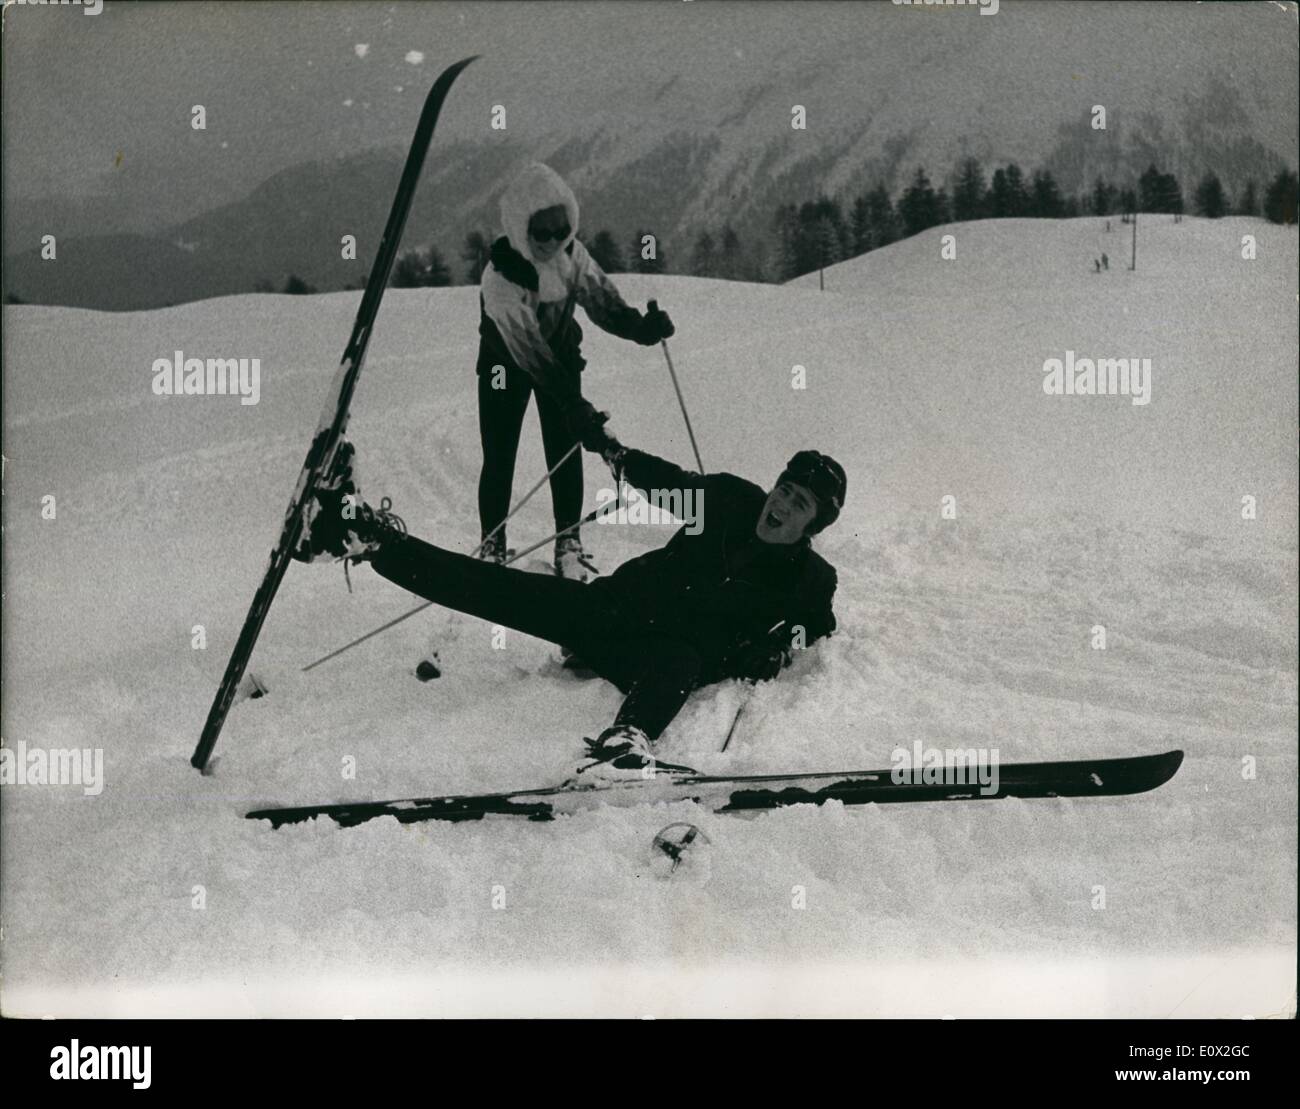 01 janv., 1965 - John Lennon prend des cours de ski à Saint-moritz : John Lennon et sa femme Cynthia sont actuellement en Suisse où John prend des leçons de ski sur les pistes de St Stéphane Thémèze. Photo montre John est aidé par son épouse Cynthia comme il ratisse un sèche mais seulement pour les bénéficier des photographes. Banque D'Images